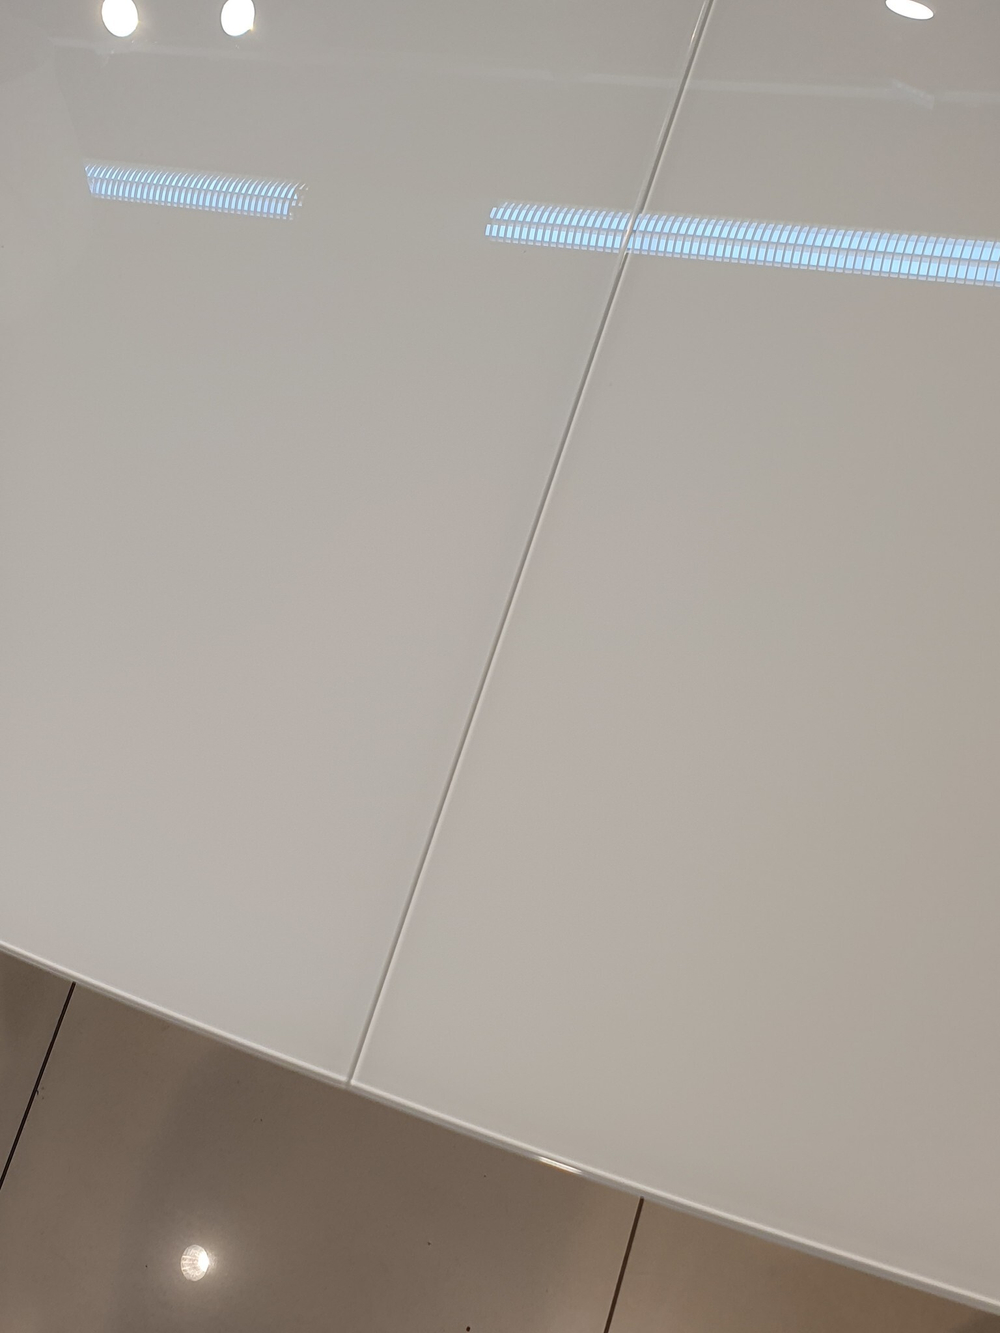 Стол обеденный, кухонный раздвижной KENNER 1200C белый/стекло белое глянец